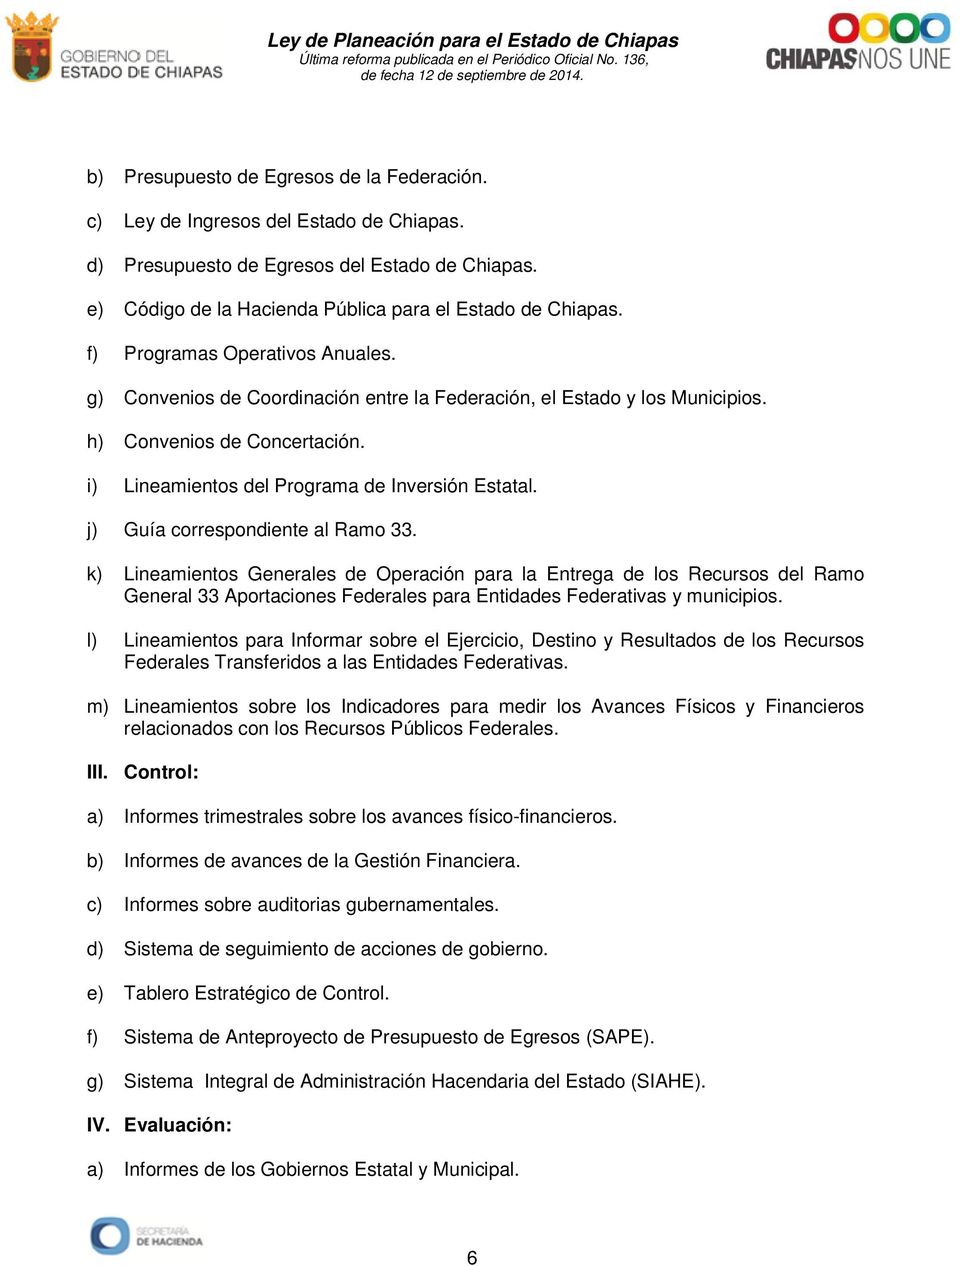 j) Guía correspondiente al Ramo 33. k) Lineamientos Generales de Operación para la Entrega de los Recursos del Ramo General 33 Aportaciones Federales para Entidades Federativas y municipios.